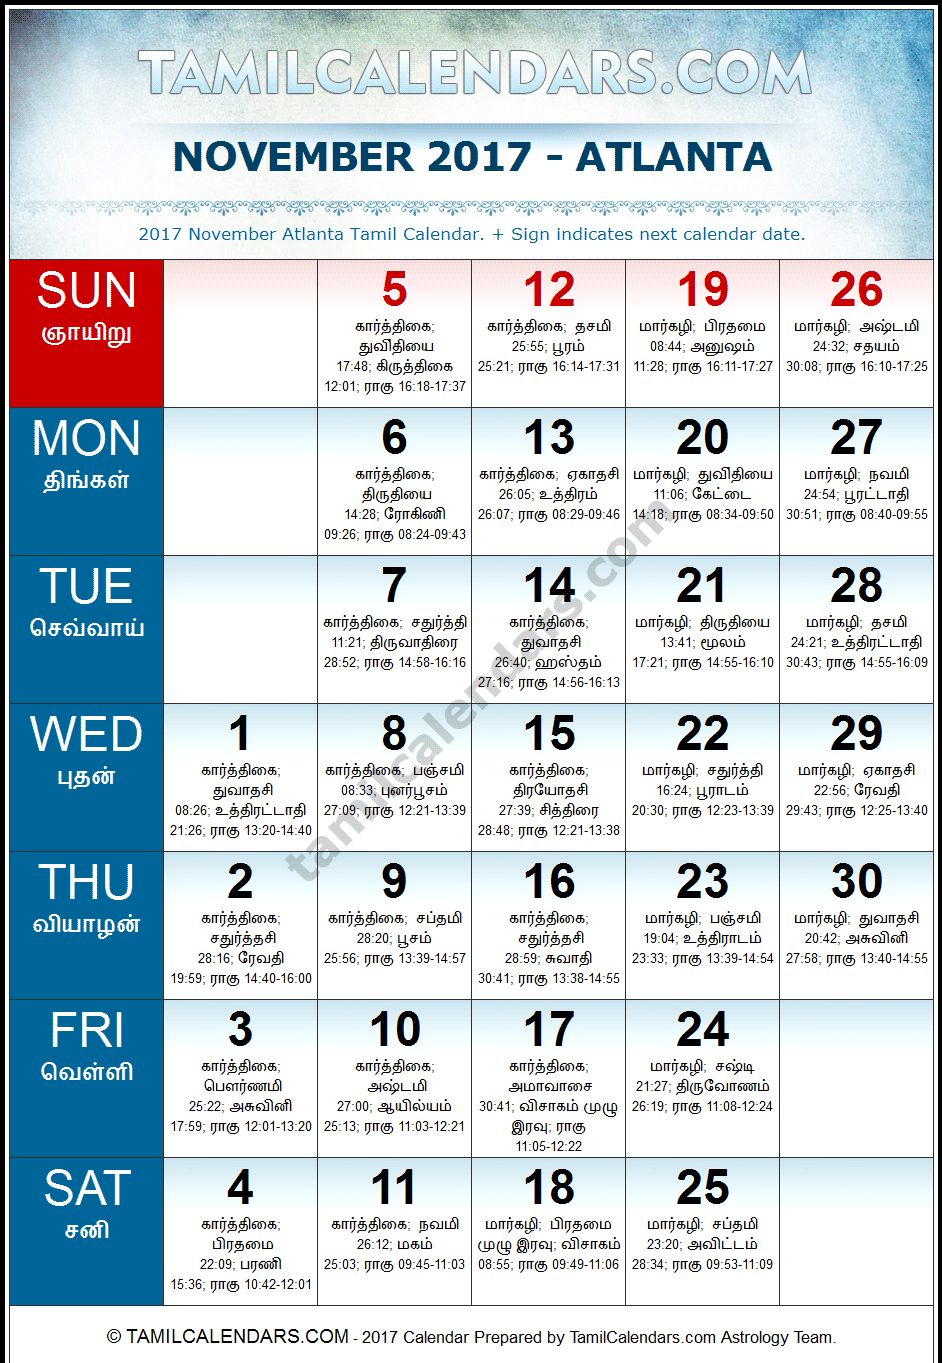 November 2017 Tamil Calendar for Atlanta, USA